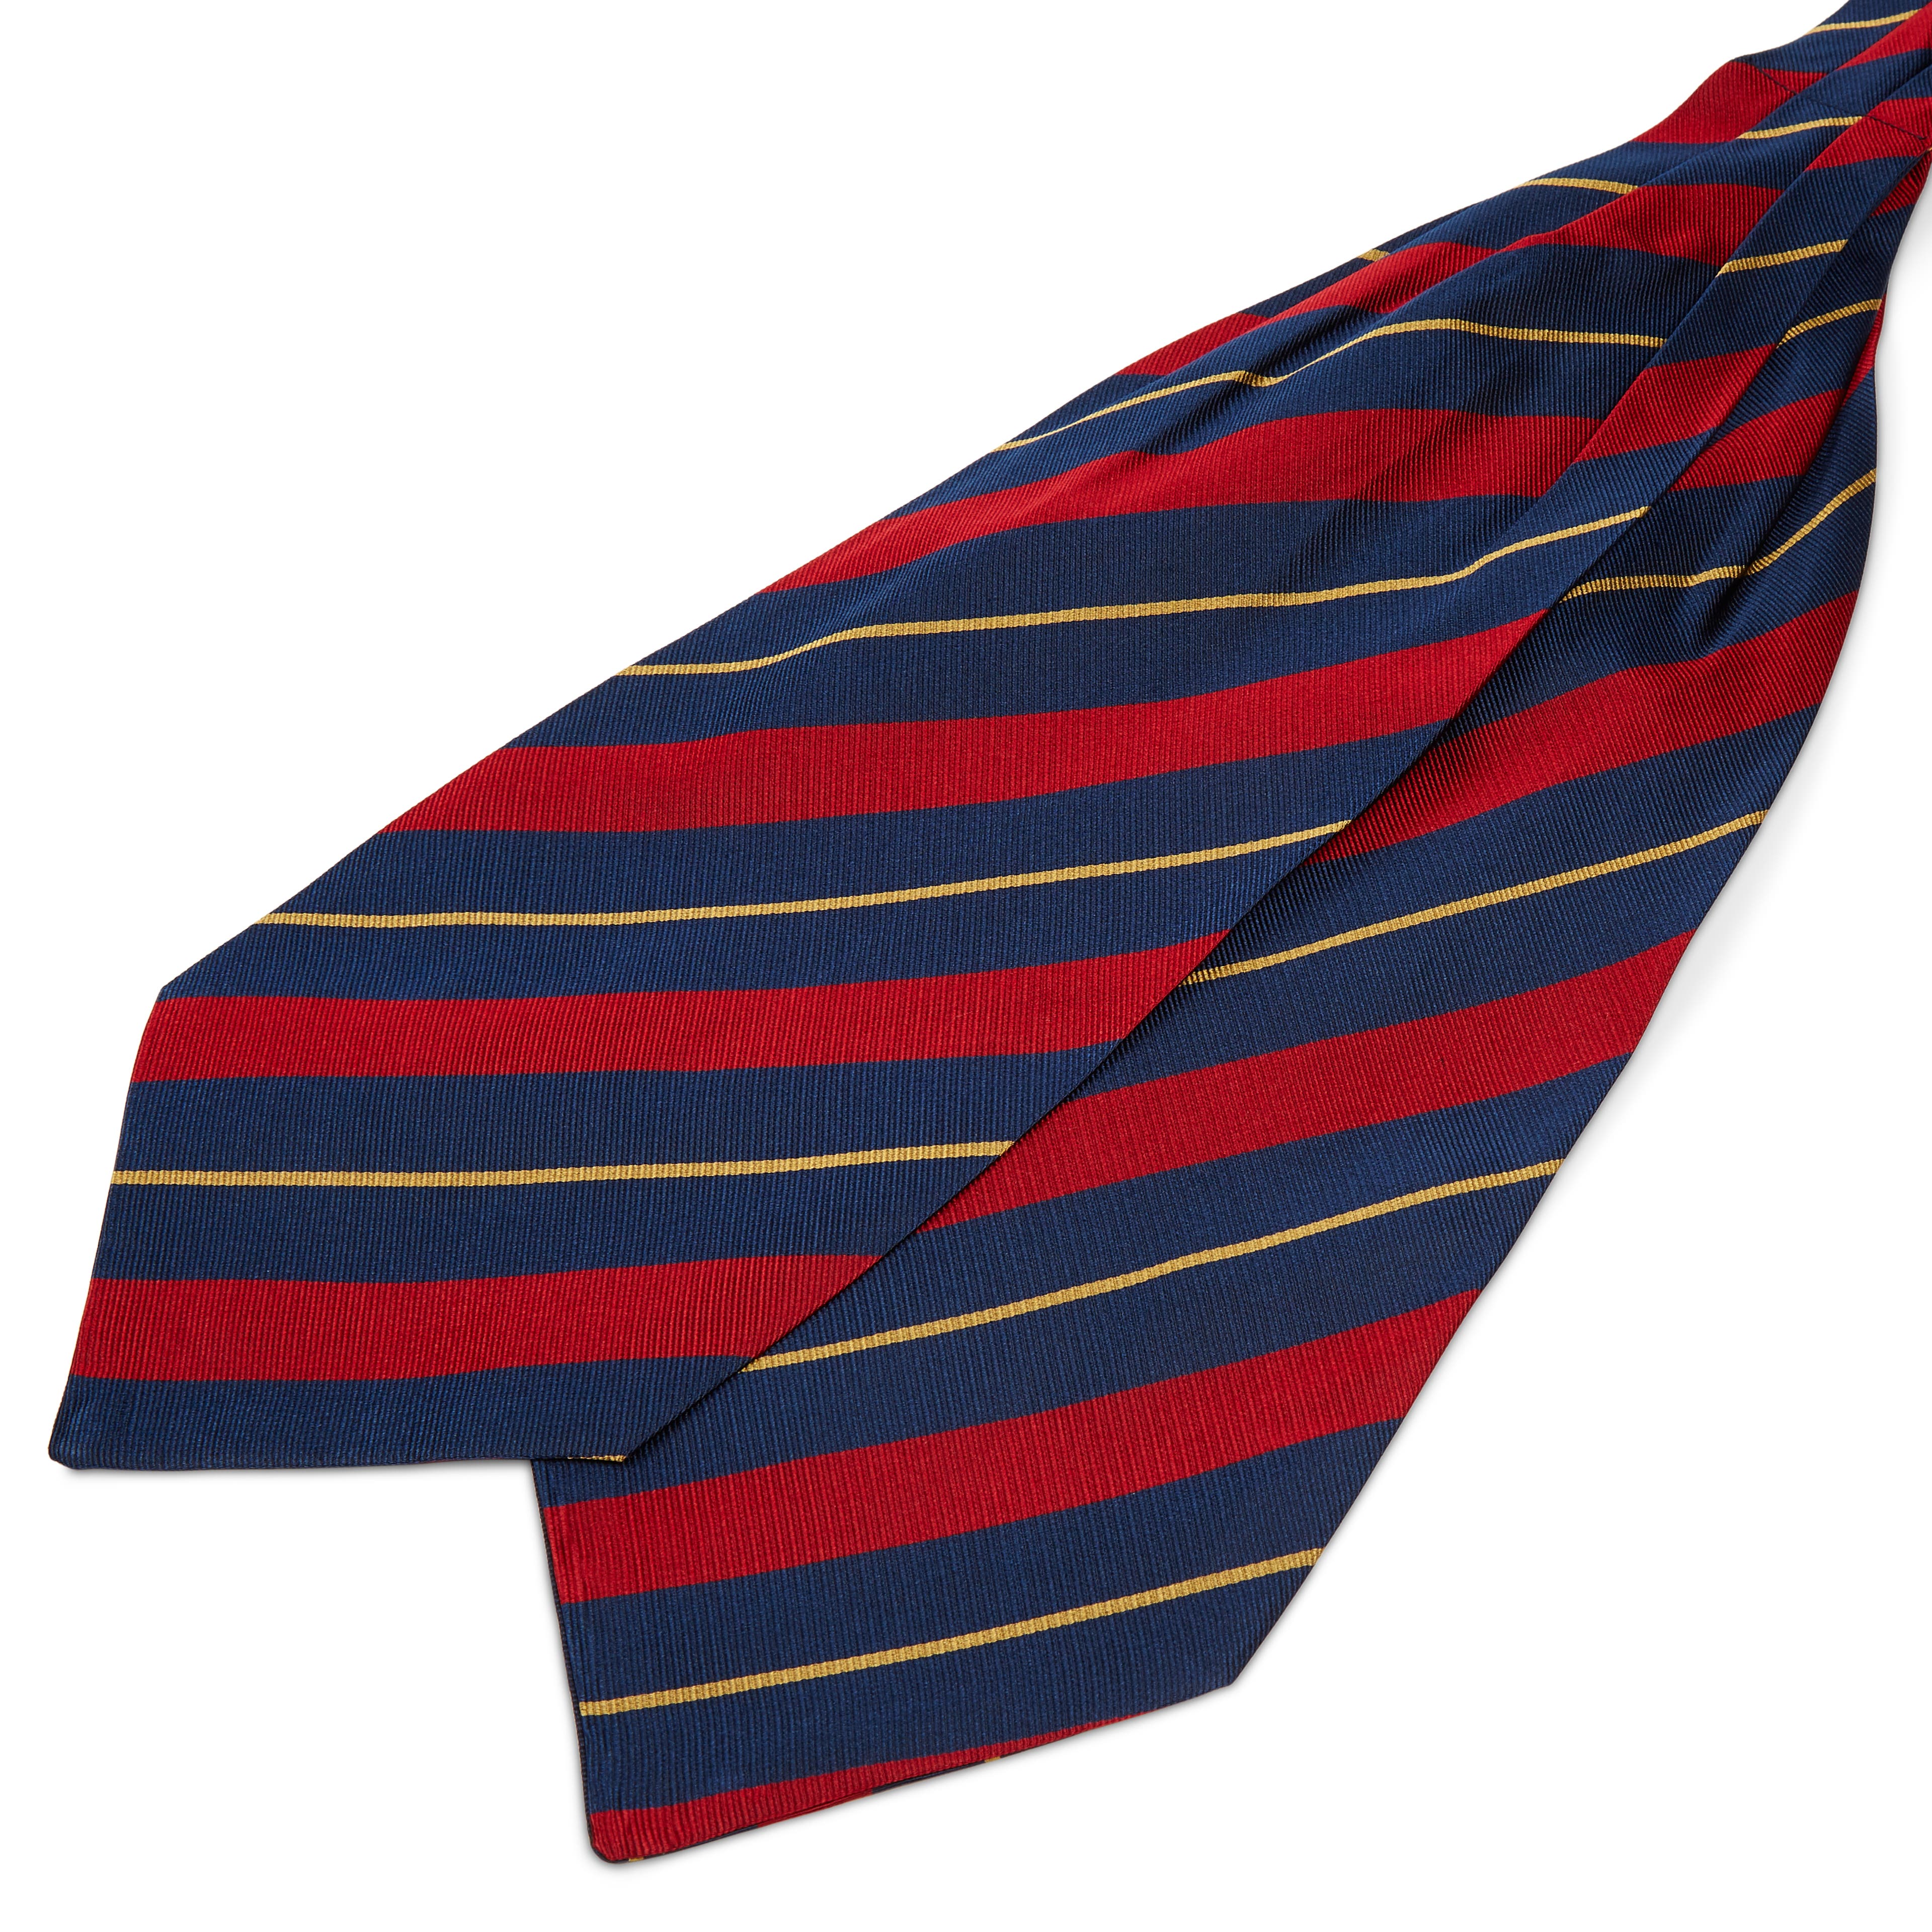 Cravatta ascot in seta blu navy con fantasia a righe oro e rosse